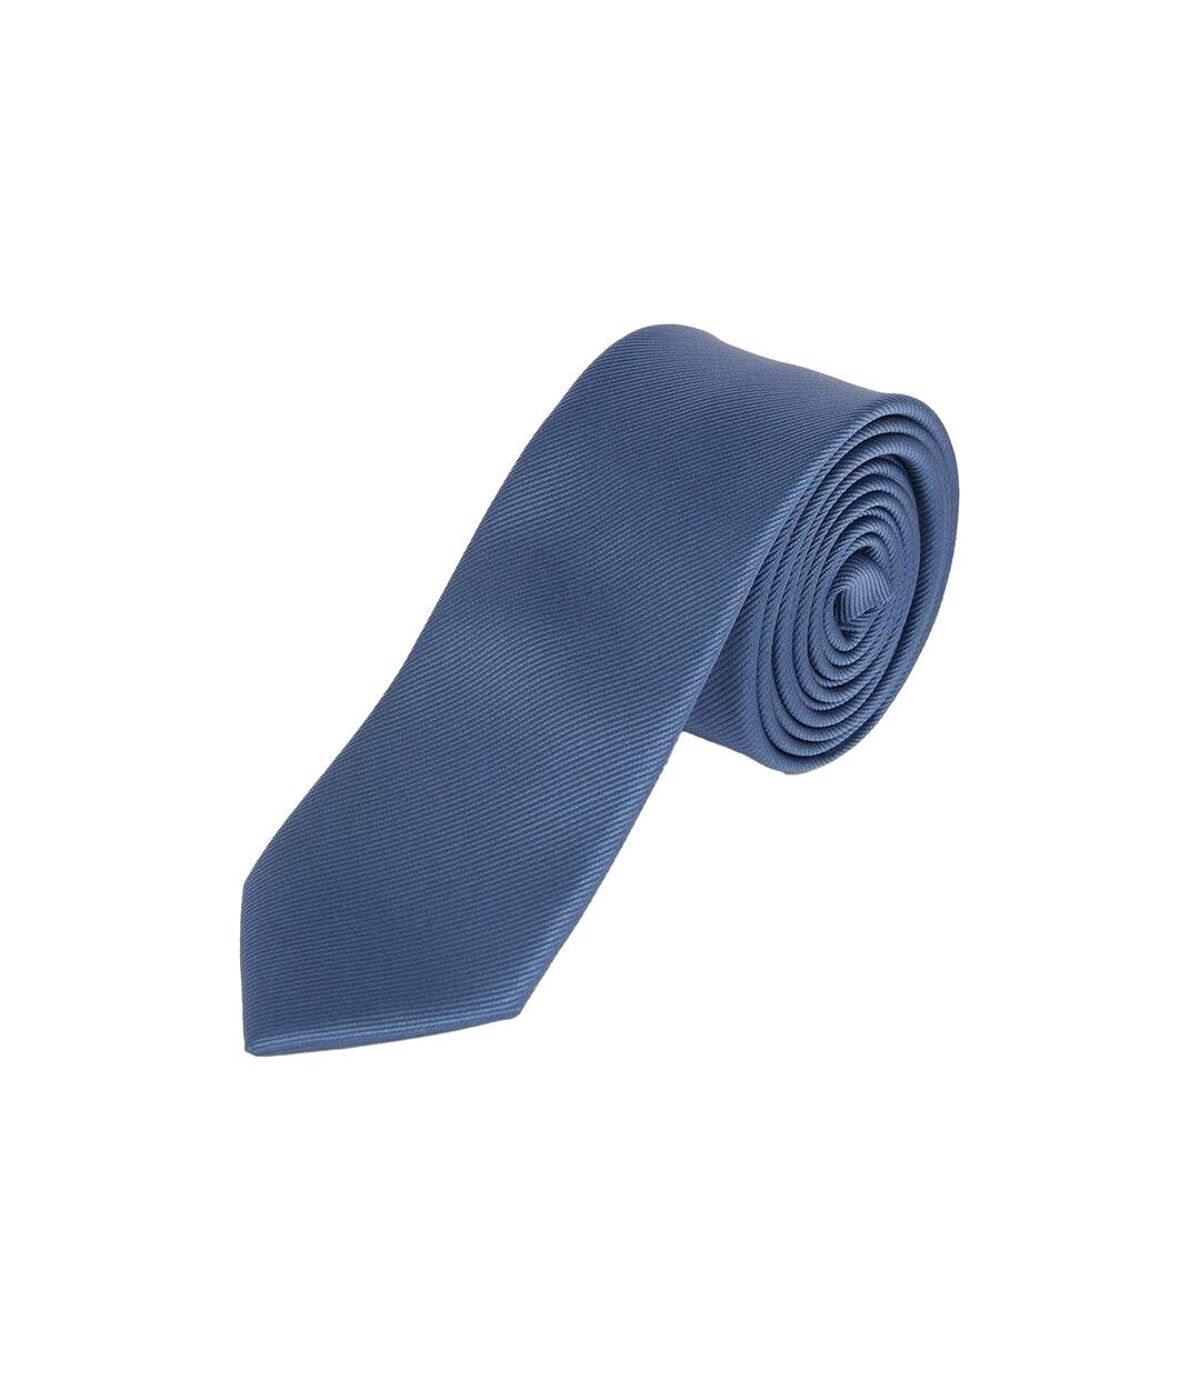 Burton Mens Slim Tie (Airforce Blue) (One Size)